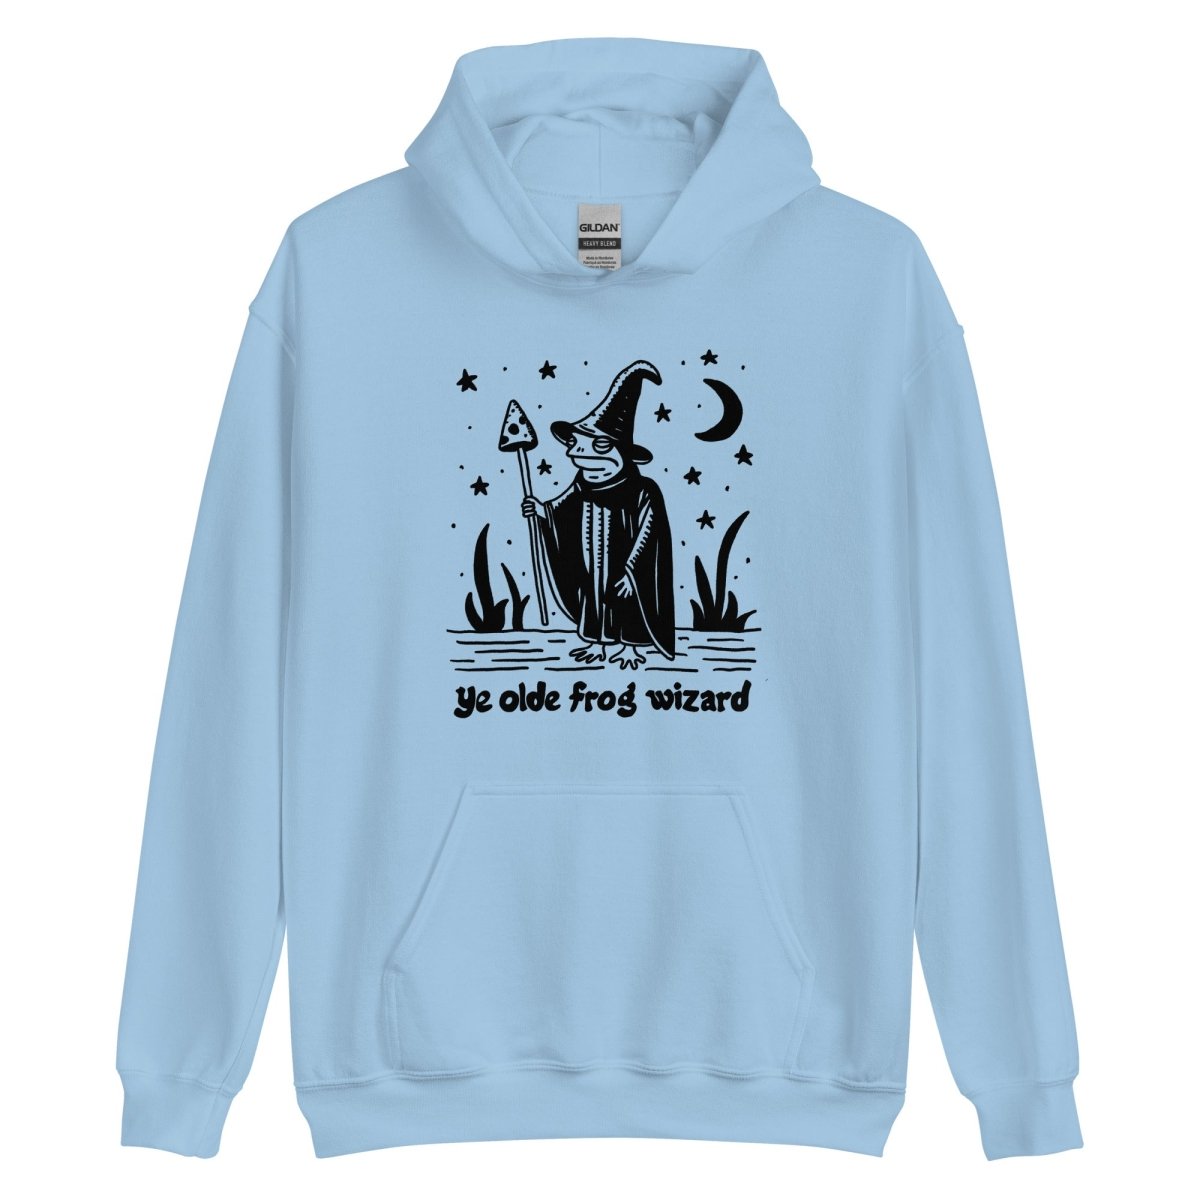 Ye olde frog wizard hooded sweatshirt - Pretty Bad Co.